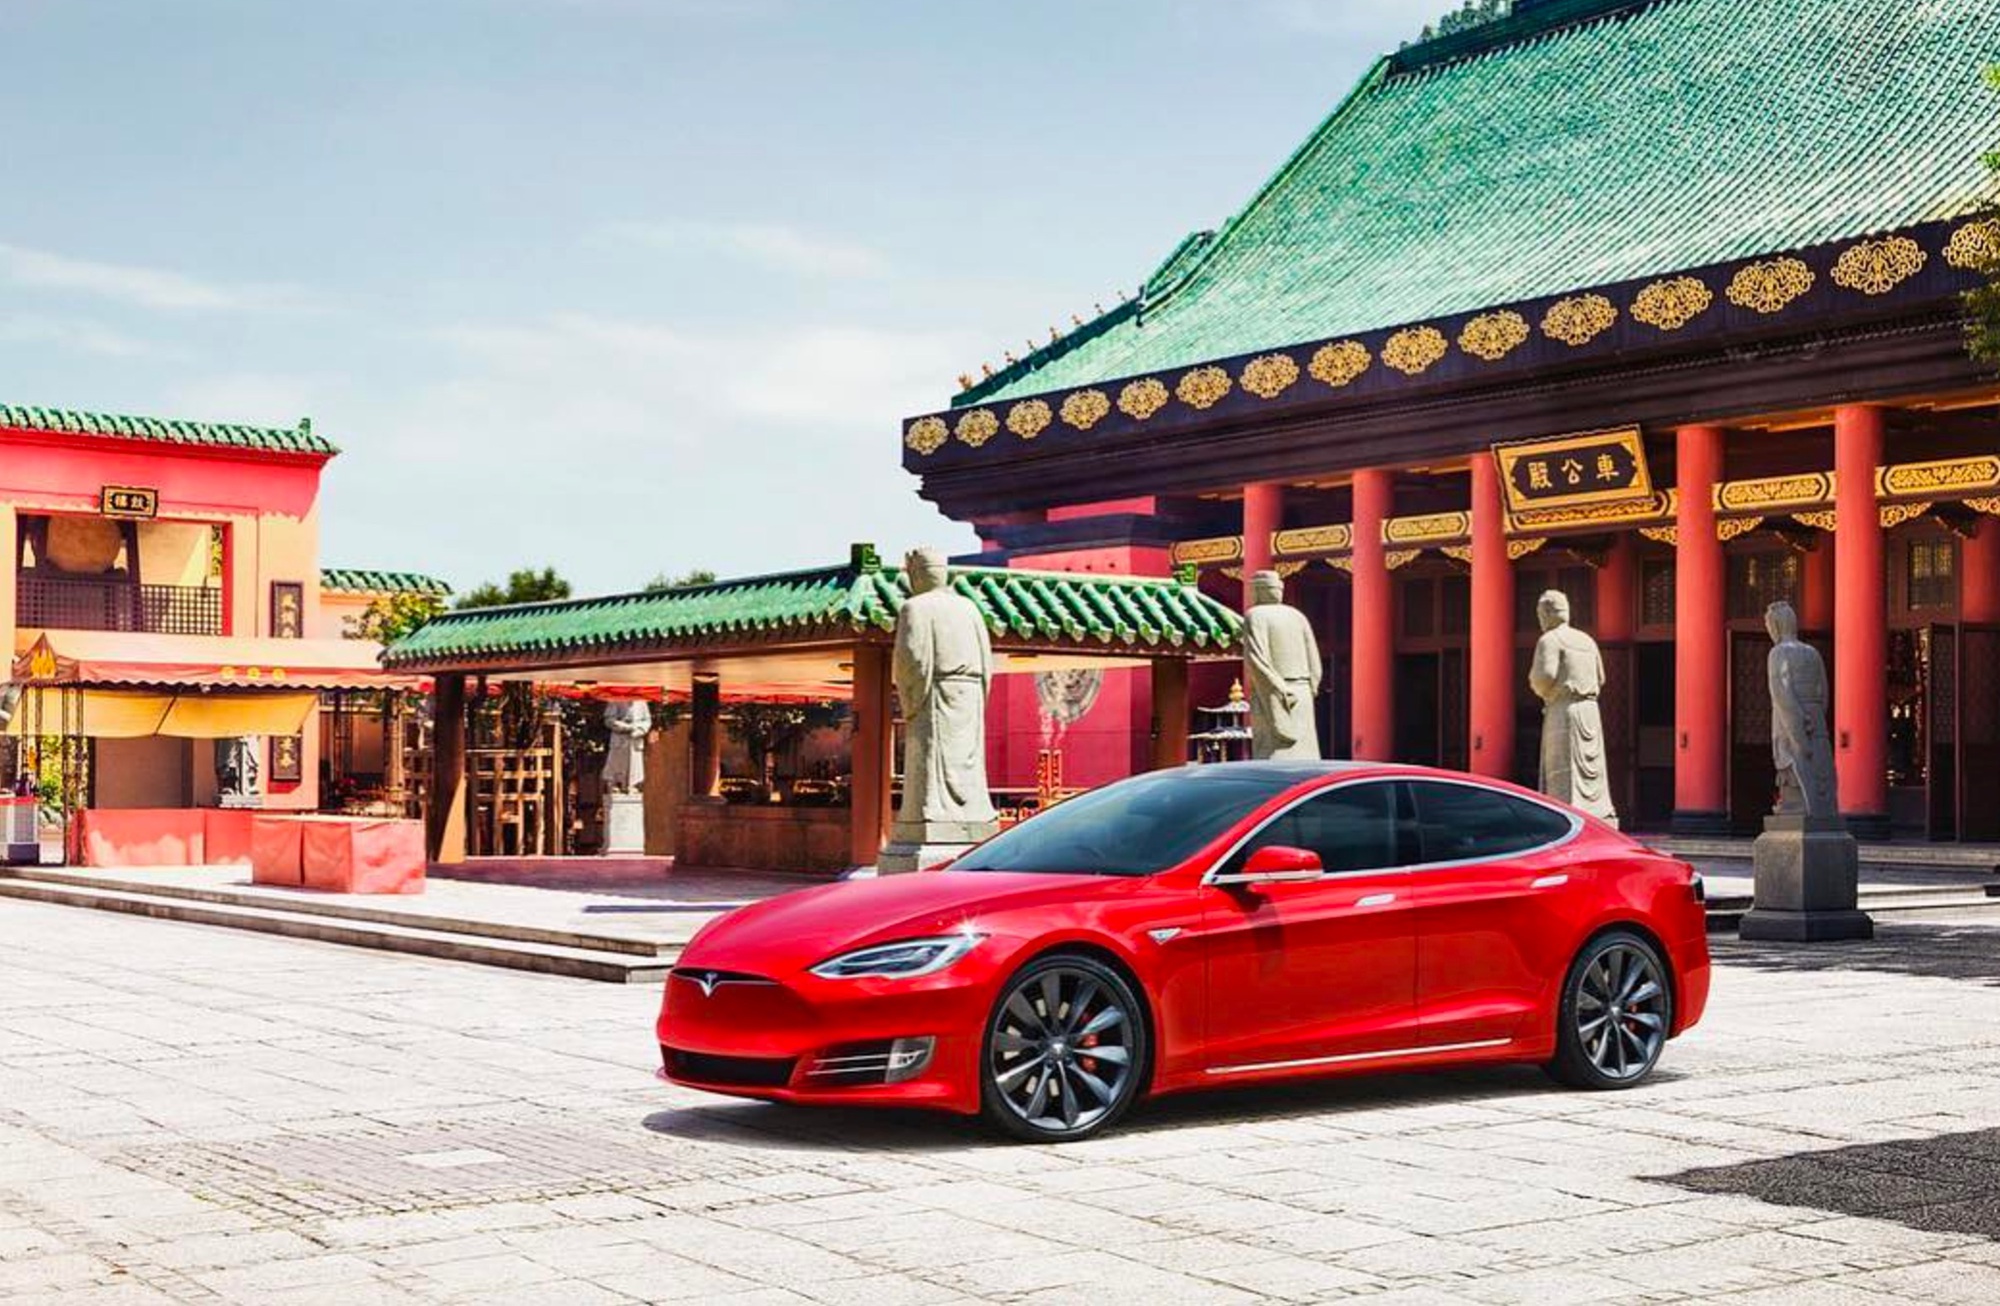 Tesla cân nhắc việc thiết lập lại chiến lược bán lẻ ở Trung Quốc- thị trường lớn thứ hai của họ, cũng như xem xét đóng cửa một số showroom ở các thành phố lớn như Bắc Kinh. Ảnh: @AFP.